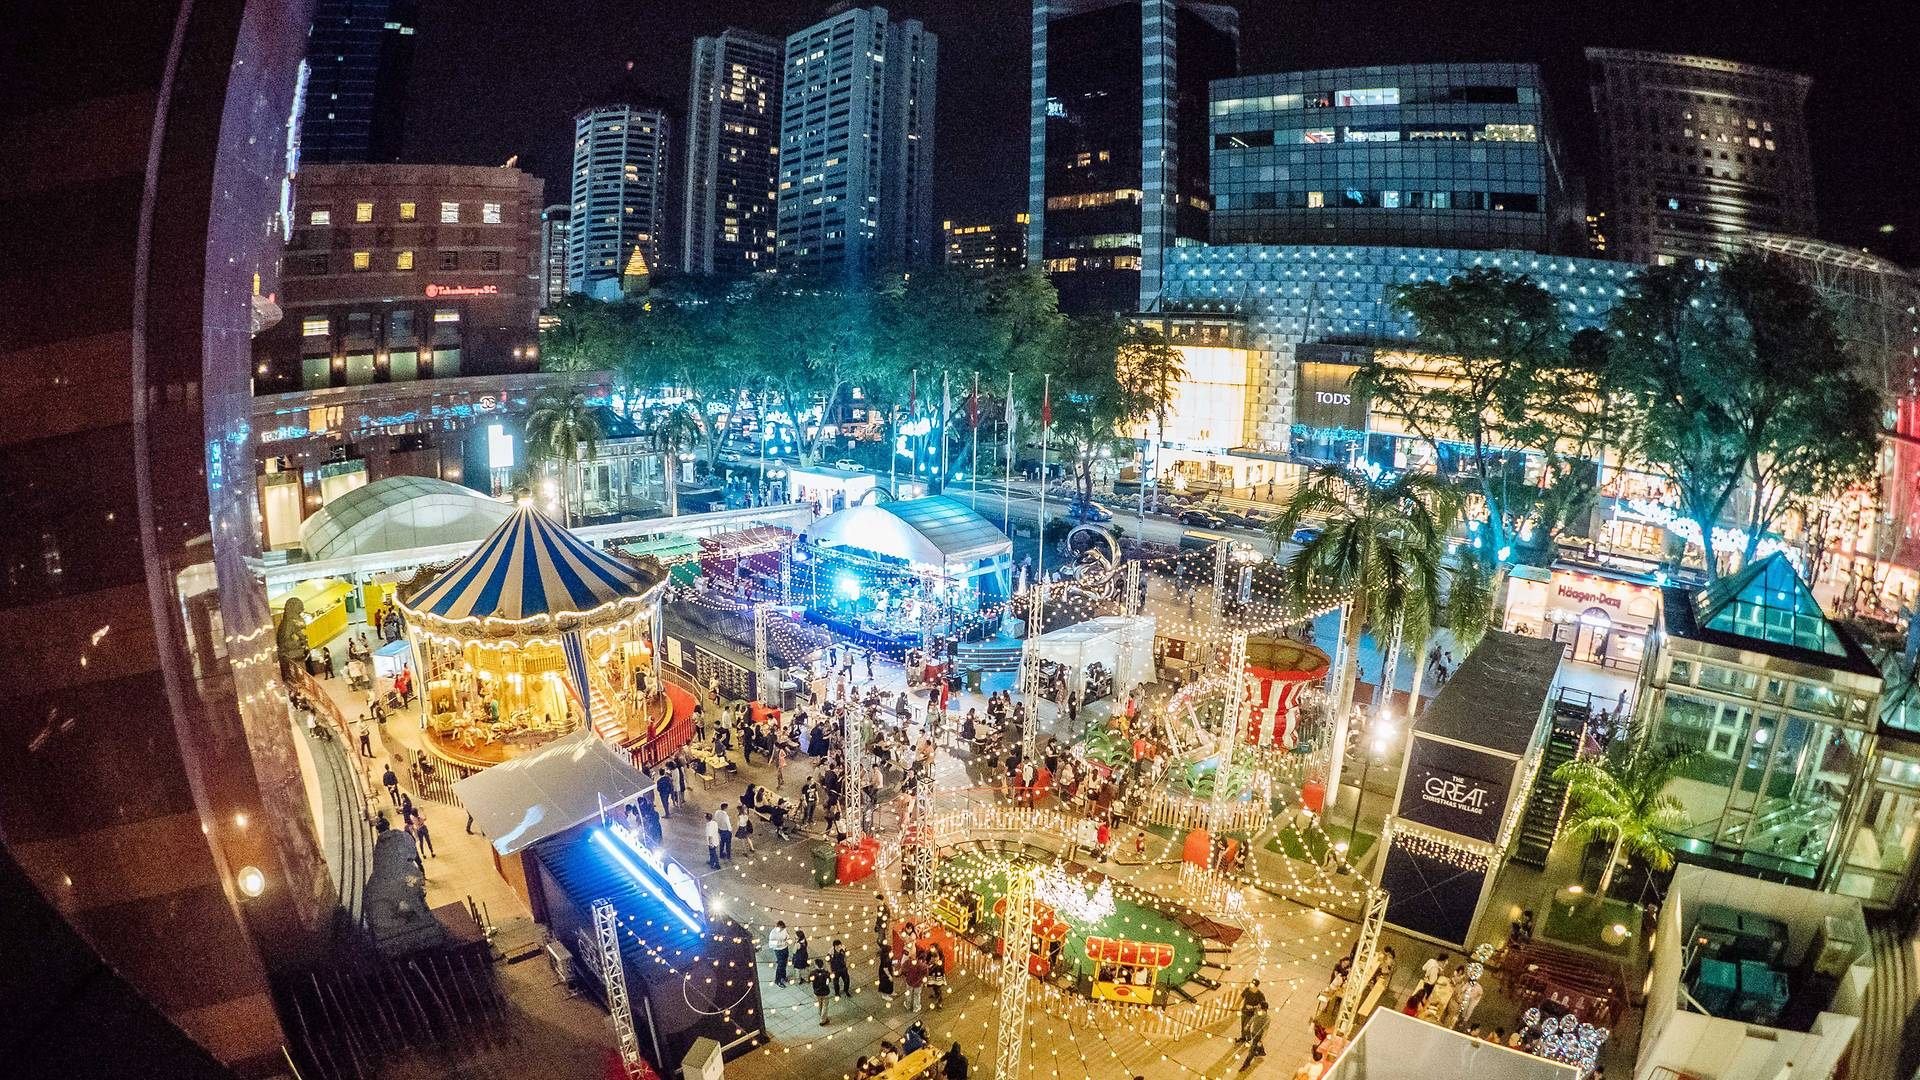 Phiên chợ trước trung tâm thương mại Ngee Ann City Civic Plaza, Singapore